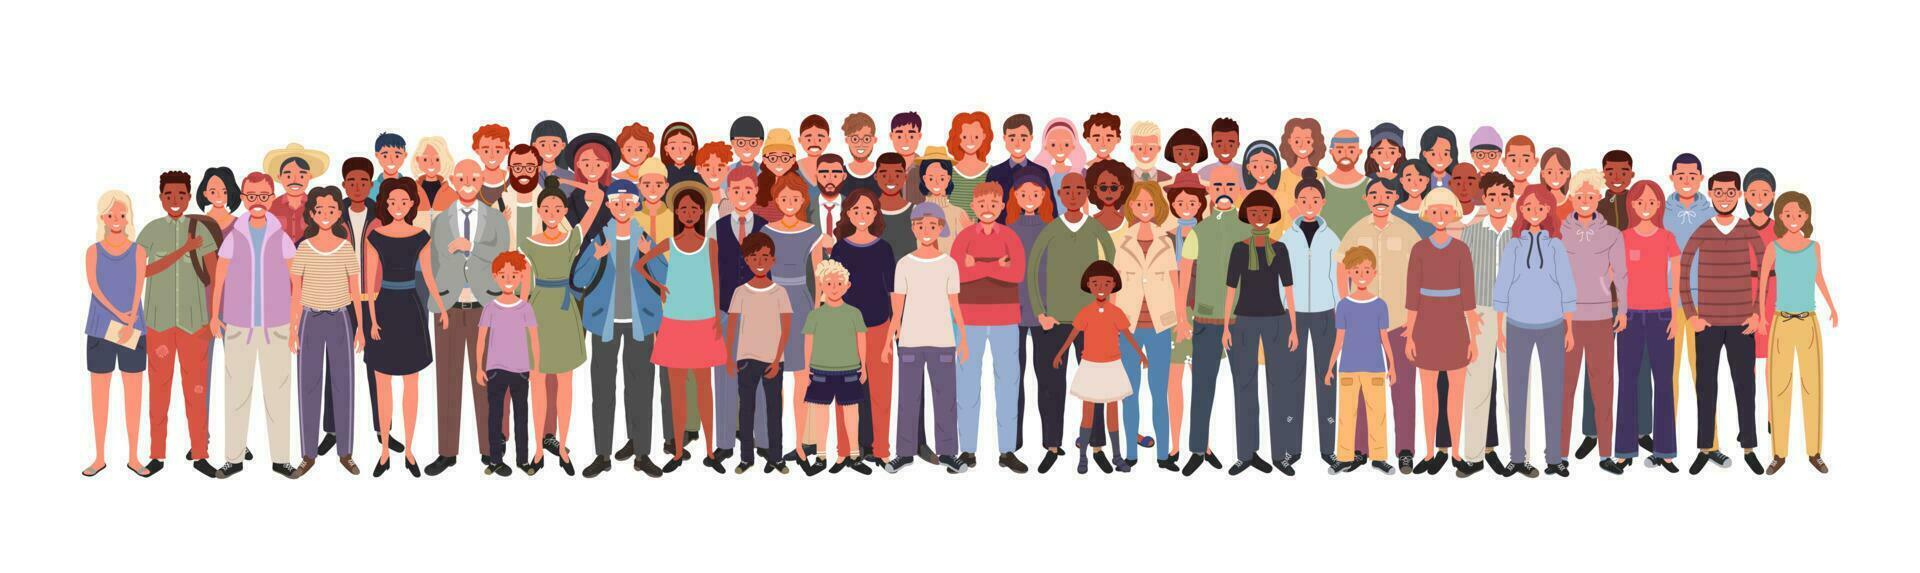 multiétnico grupo do pessoas isolado em branco fundo. jovem, adultos e idosos. crianças e adolescentes ficar de pé junto. vetor ilustração do homens e mulheres do diferente nacionalidades e idades.